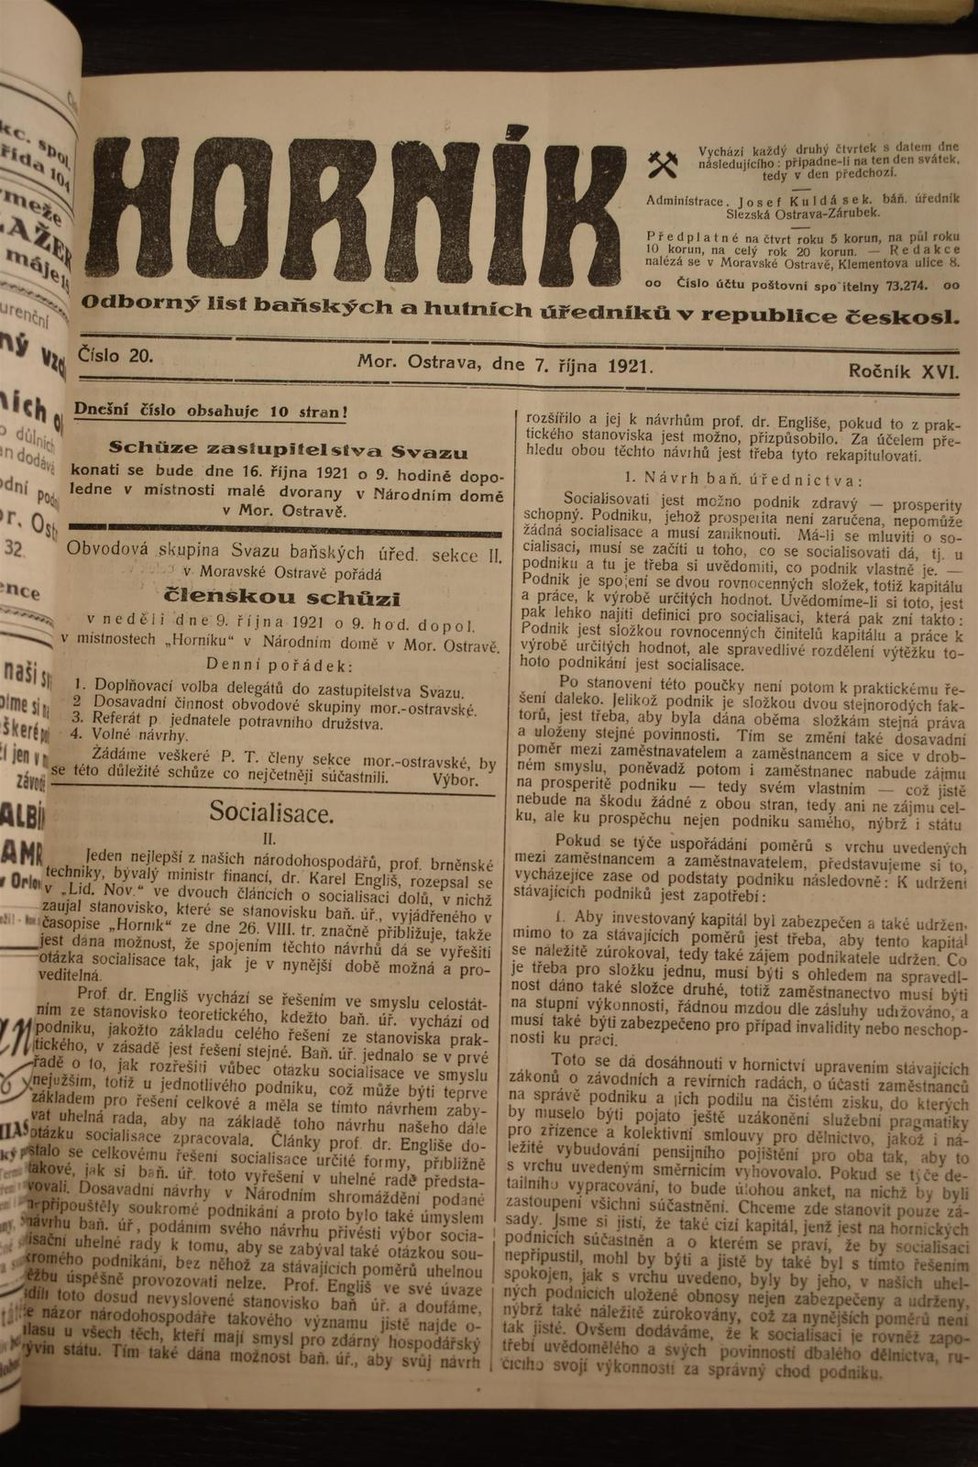 Socialisace aneb spravedlivé rozdělení výdělku báňských podniků řešil dvoutýdeník Horník vydávaný v Ostravě.